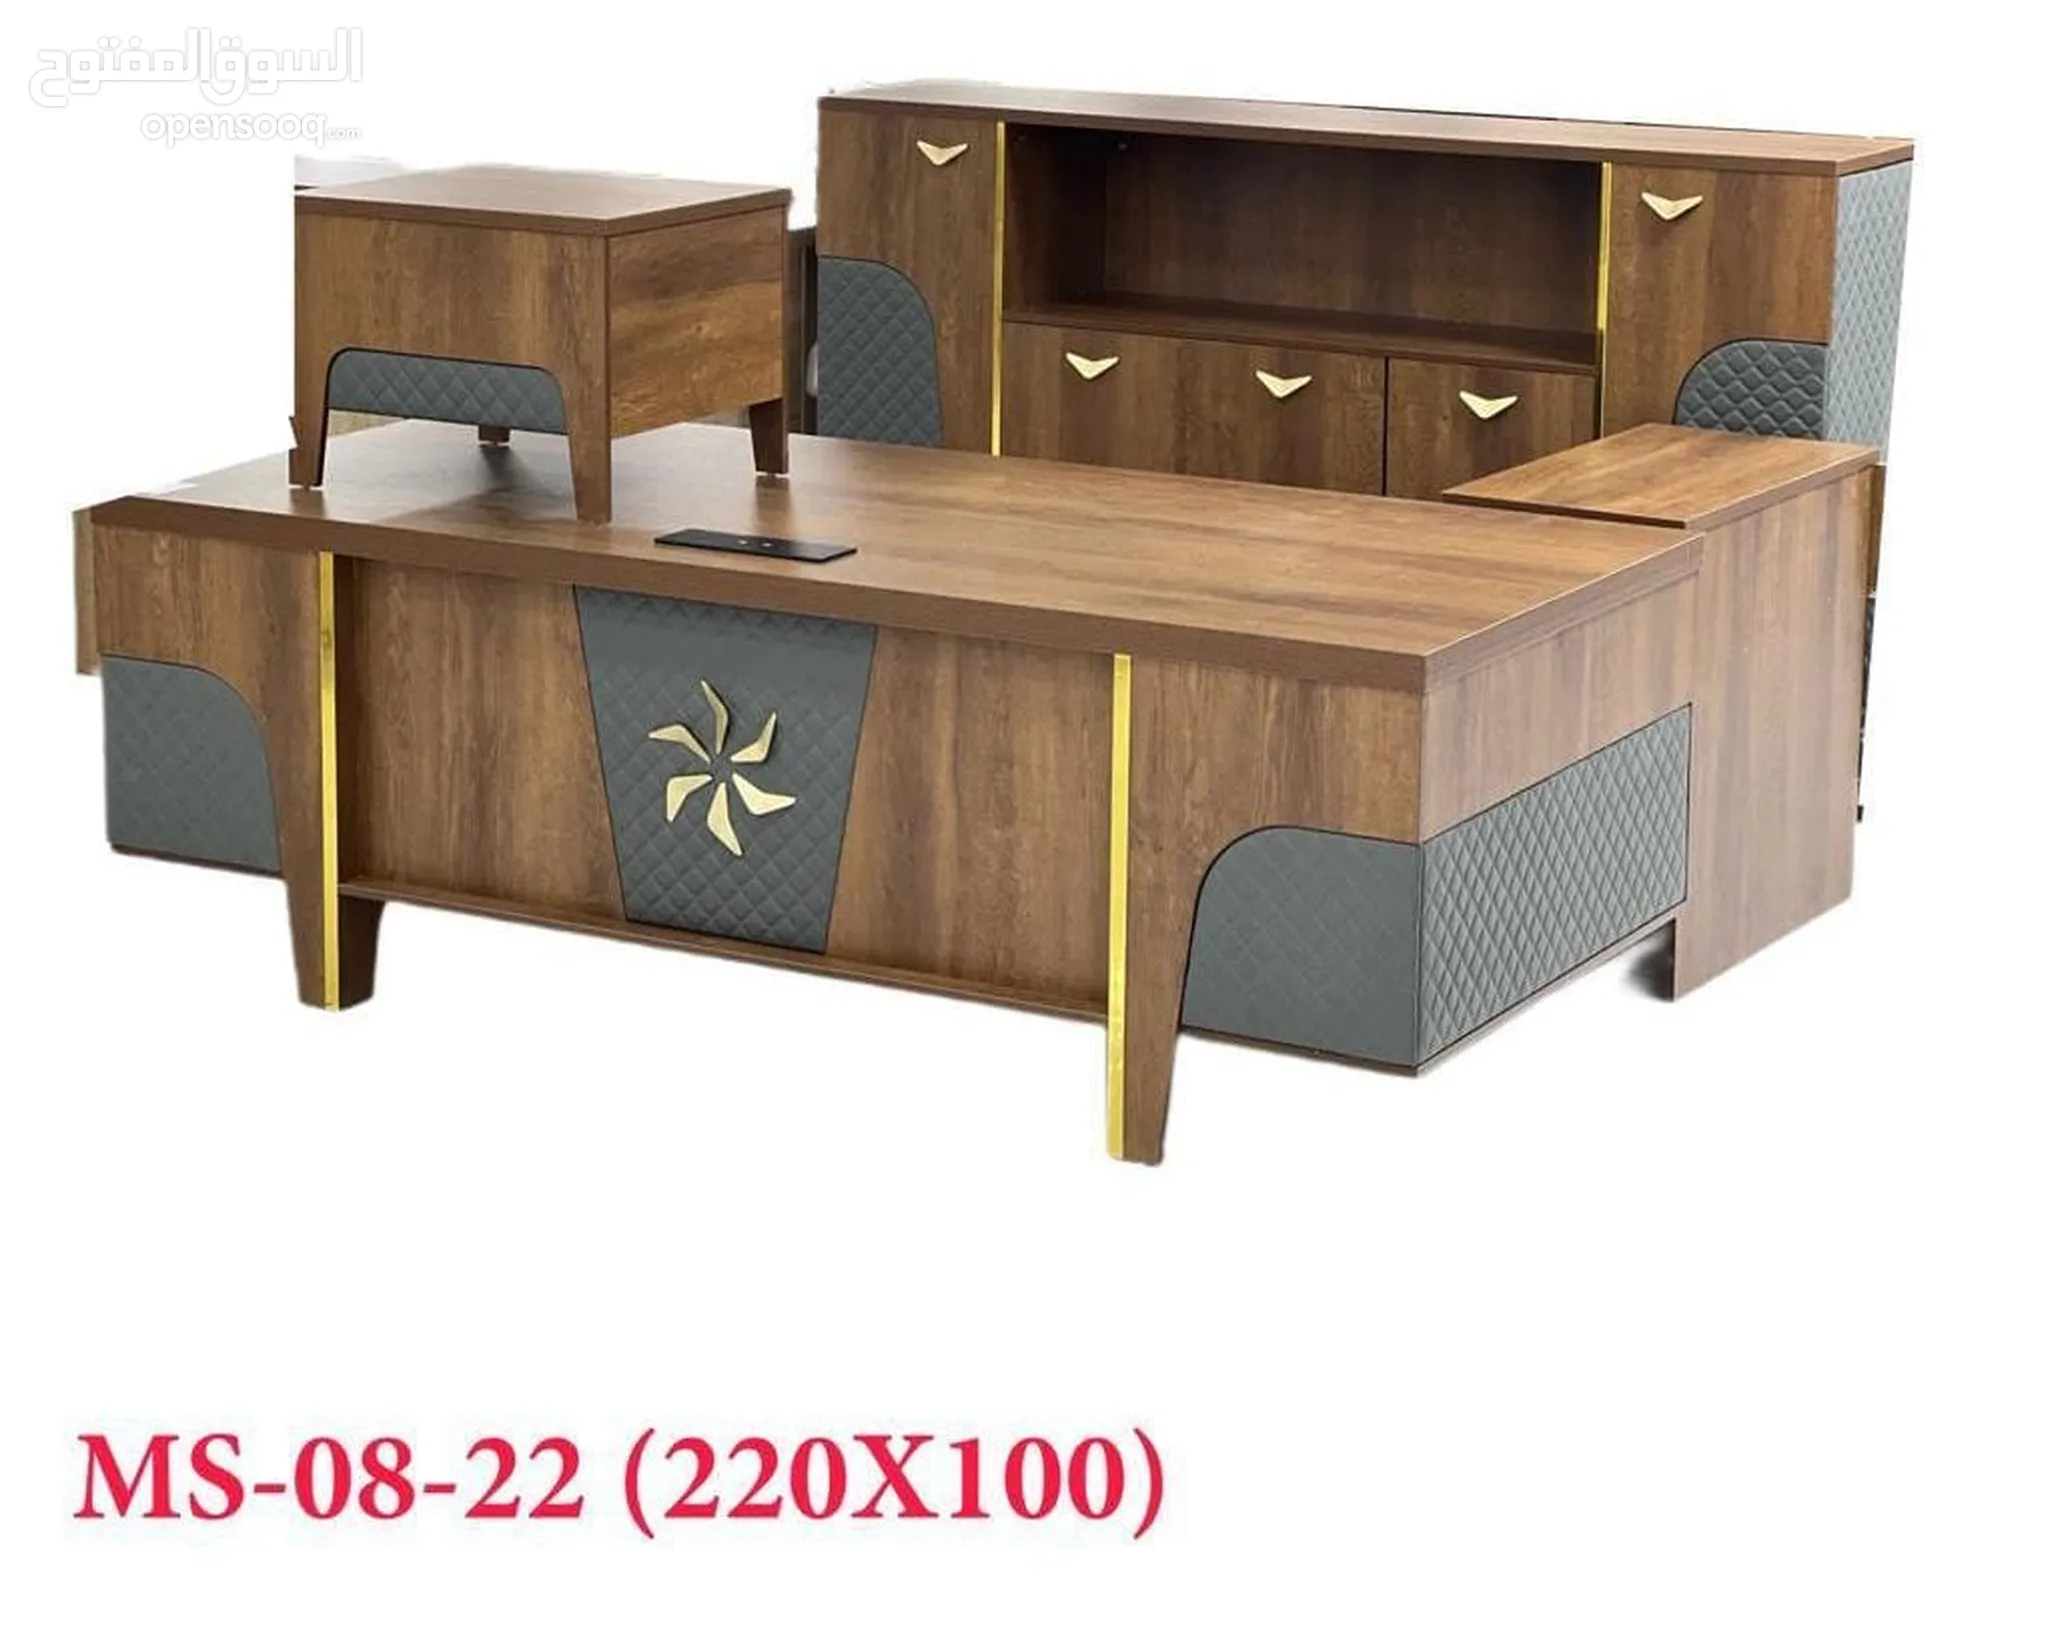 اثاث مكاتب للبيع : اثاث مكتبي : طاولات وكراسي : ارخص الاسعار في جدة | السوق  المفتوح